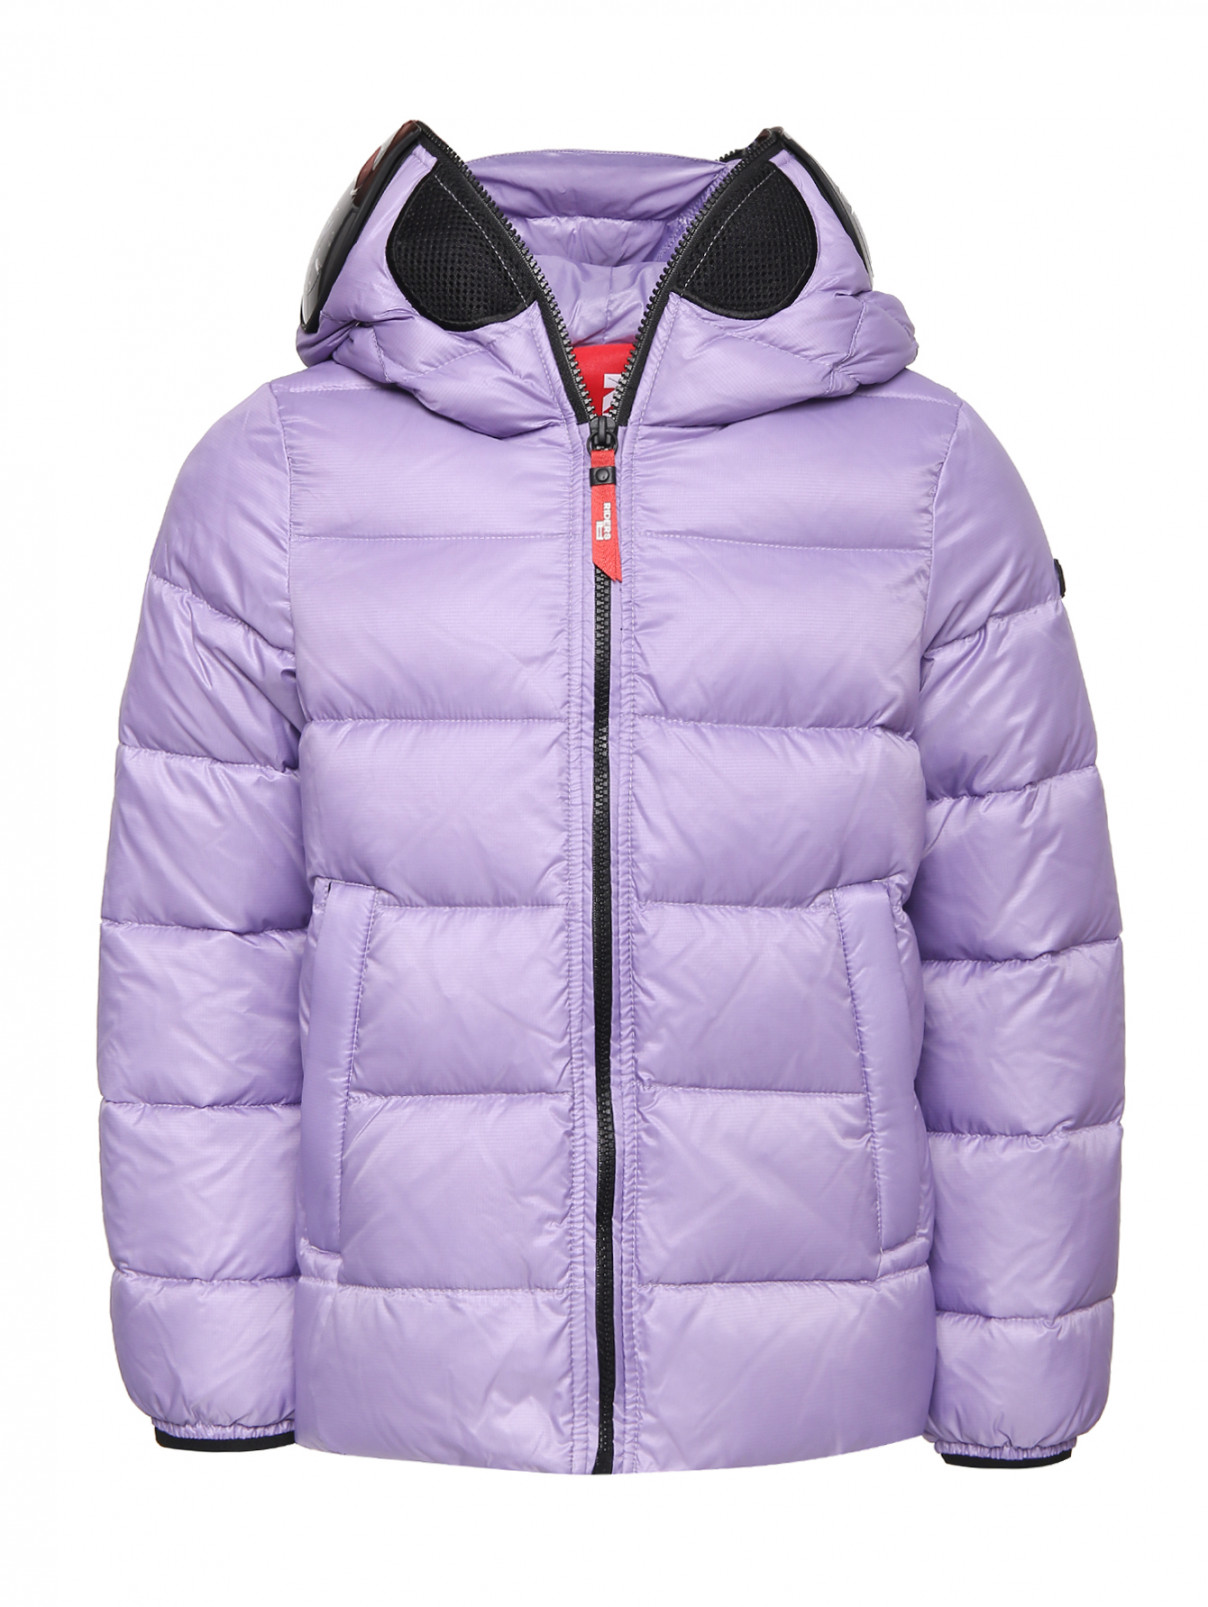 Пуховая куртка с линзами на капюшоне Ai Riders  –  Общий вид  – Цвет:  Фиолетовый